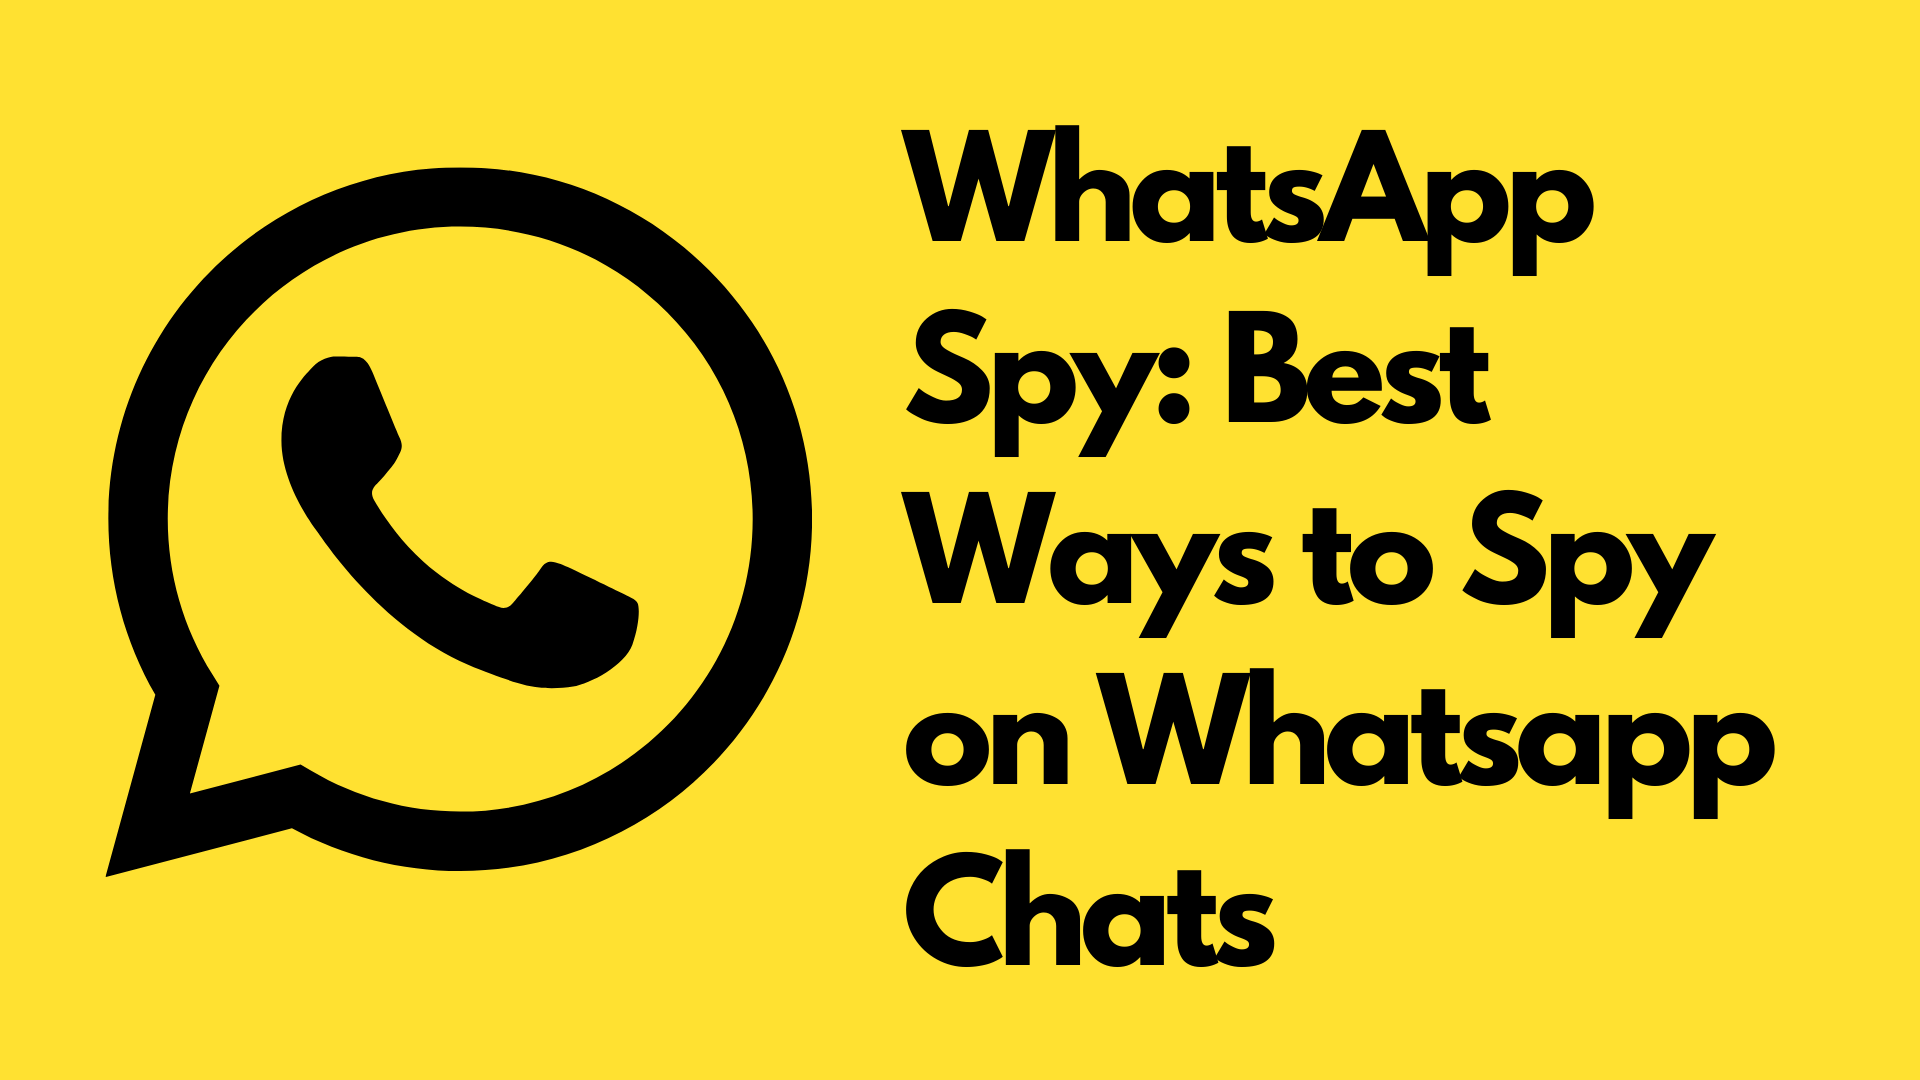 How to Spy on WhatsApp – Best WhatsApp Spy Apps in 2022